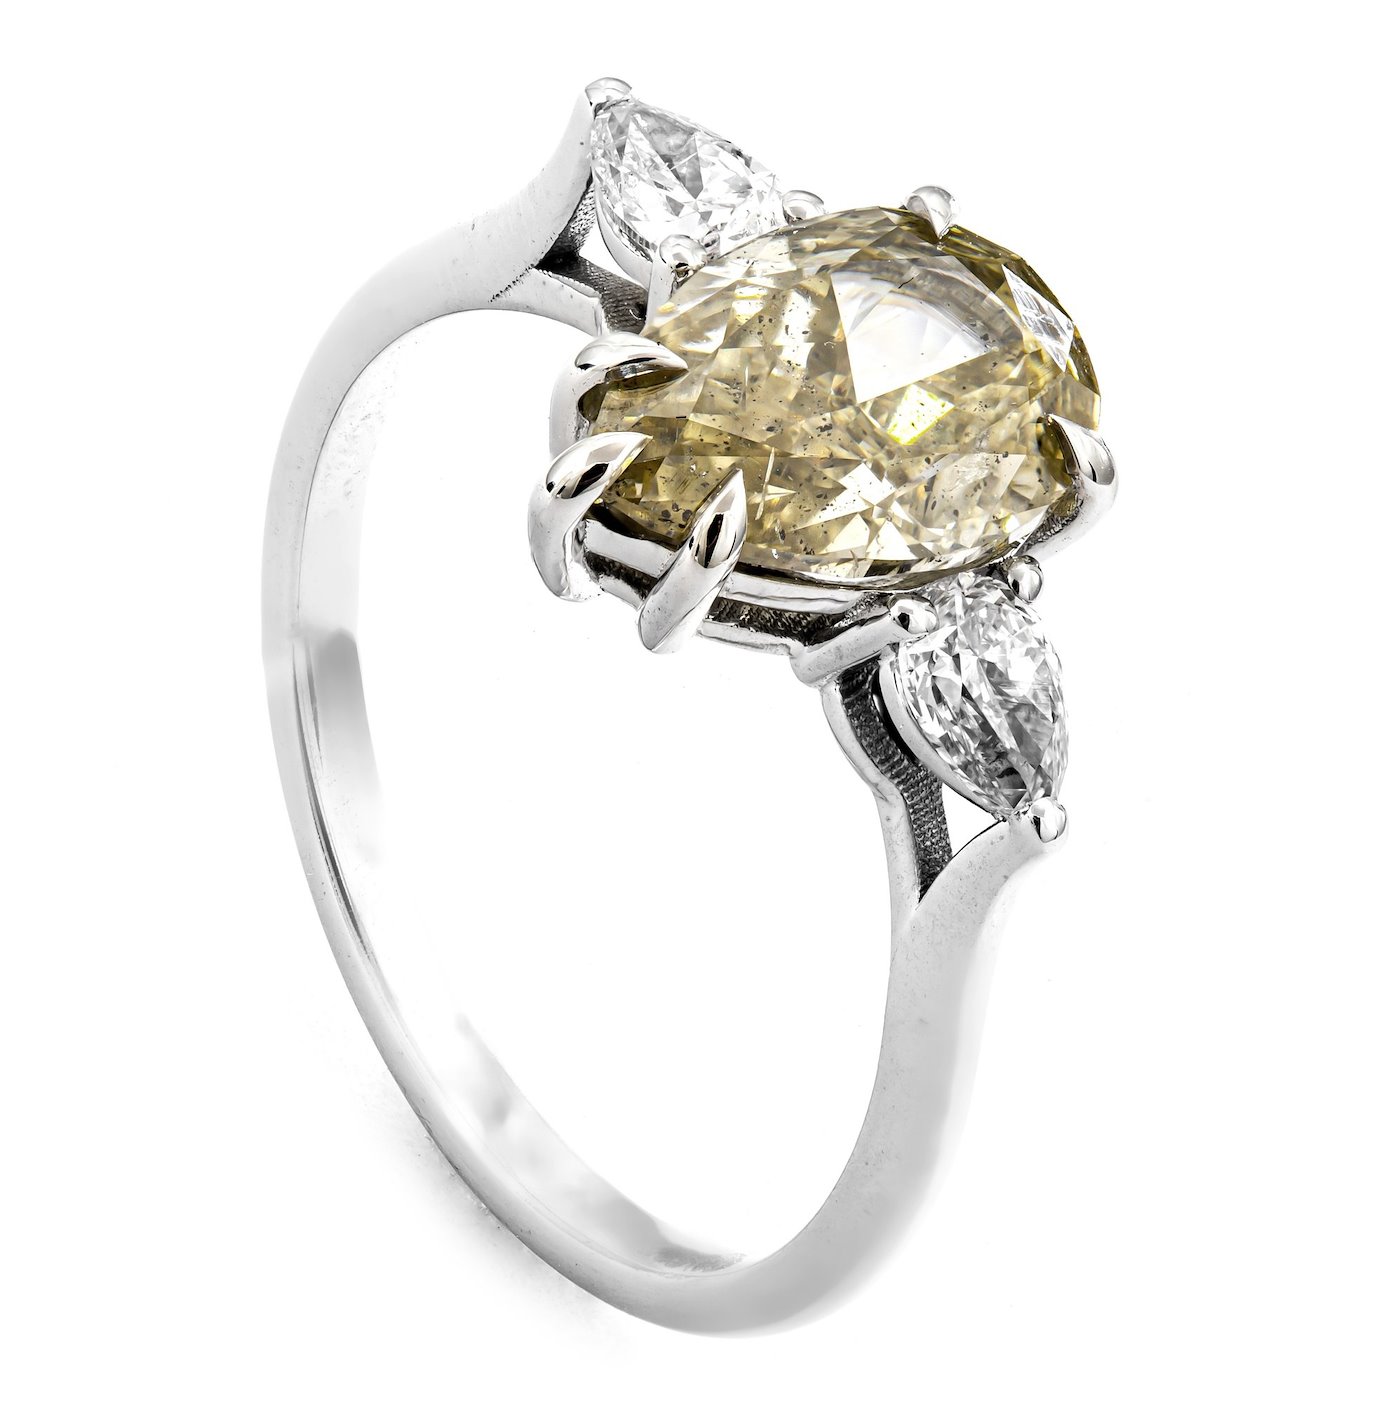 .. - Luxusní prsten s 2,06 Natural Fancy Light (AA) diamantem a 0,35 ct Natural Light Pink diamanty, bílé zlato 585/1000, značeno platnou puncovní značkou "labuť", hrubá hmotnost 2,08 g